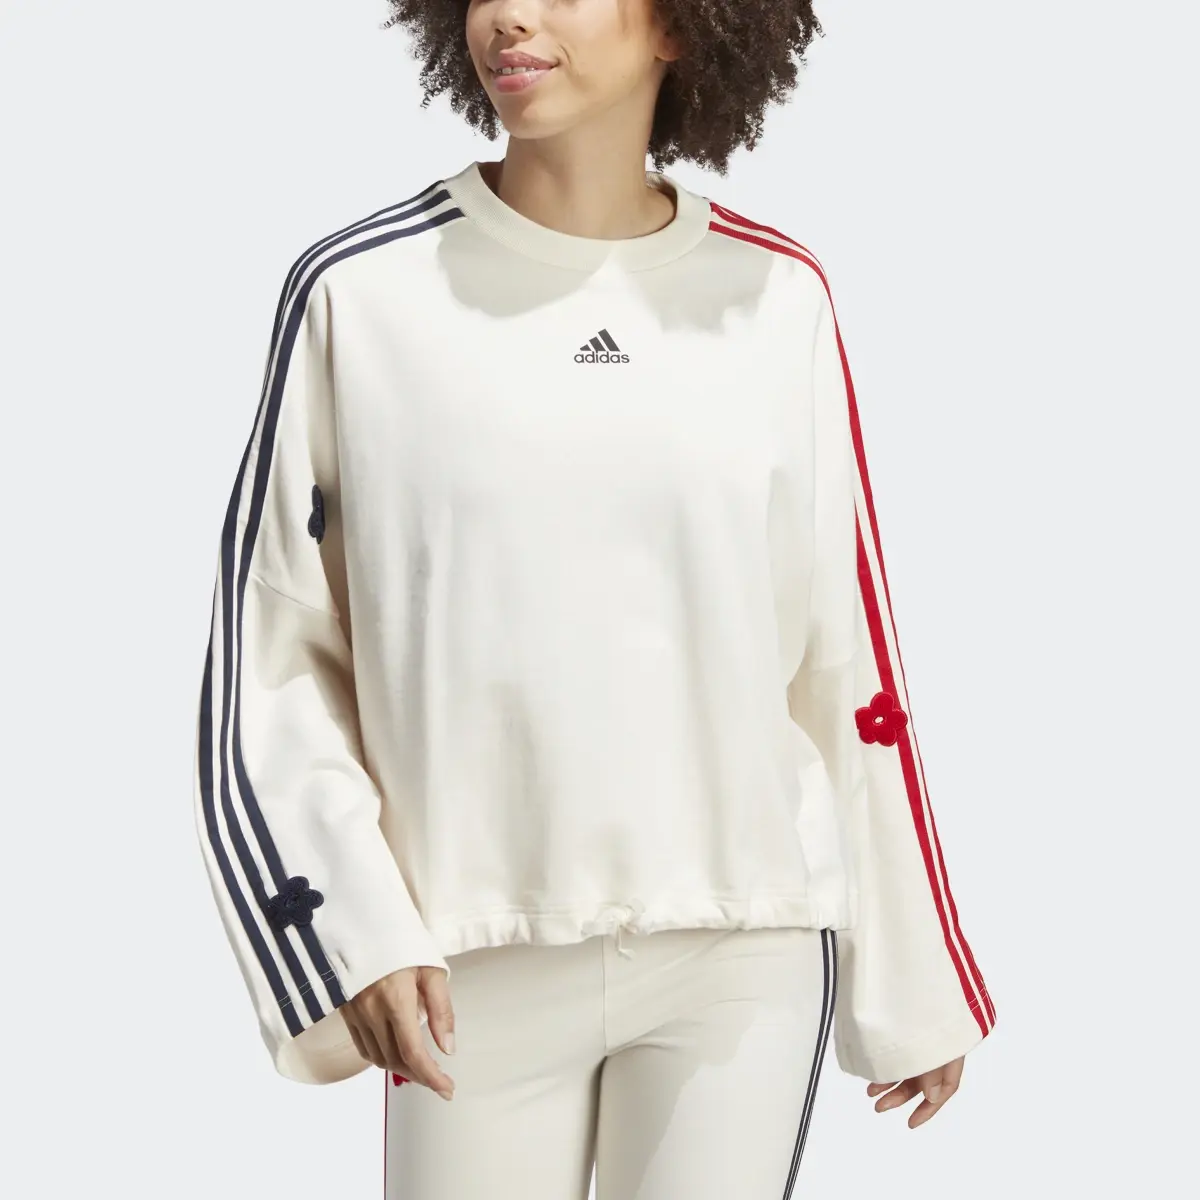 Adidas Sweatshirt 3-Stripes com Remendos Florais em Feltro. 1